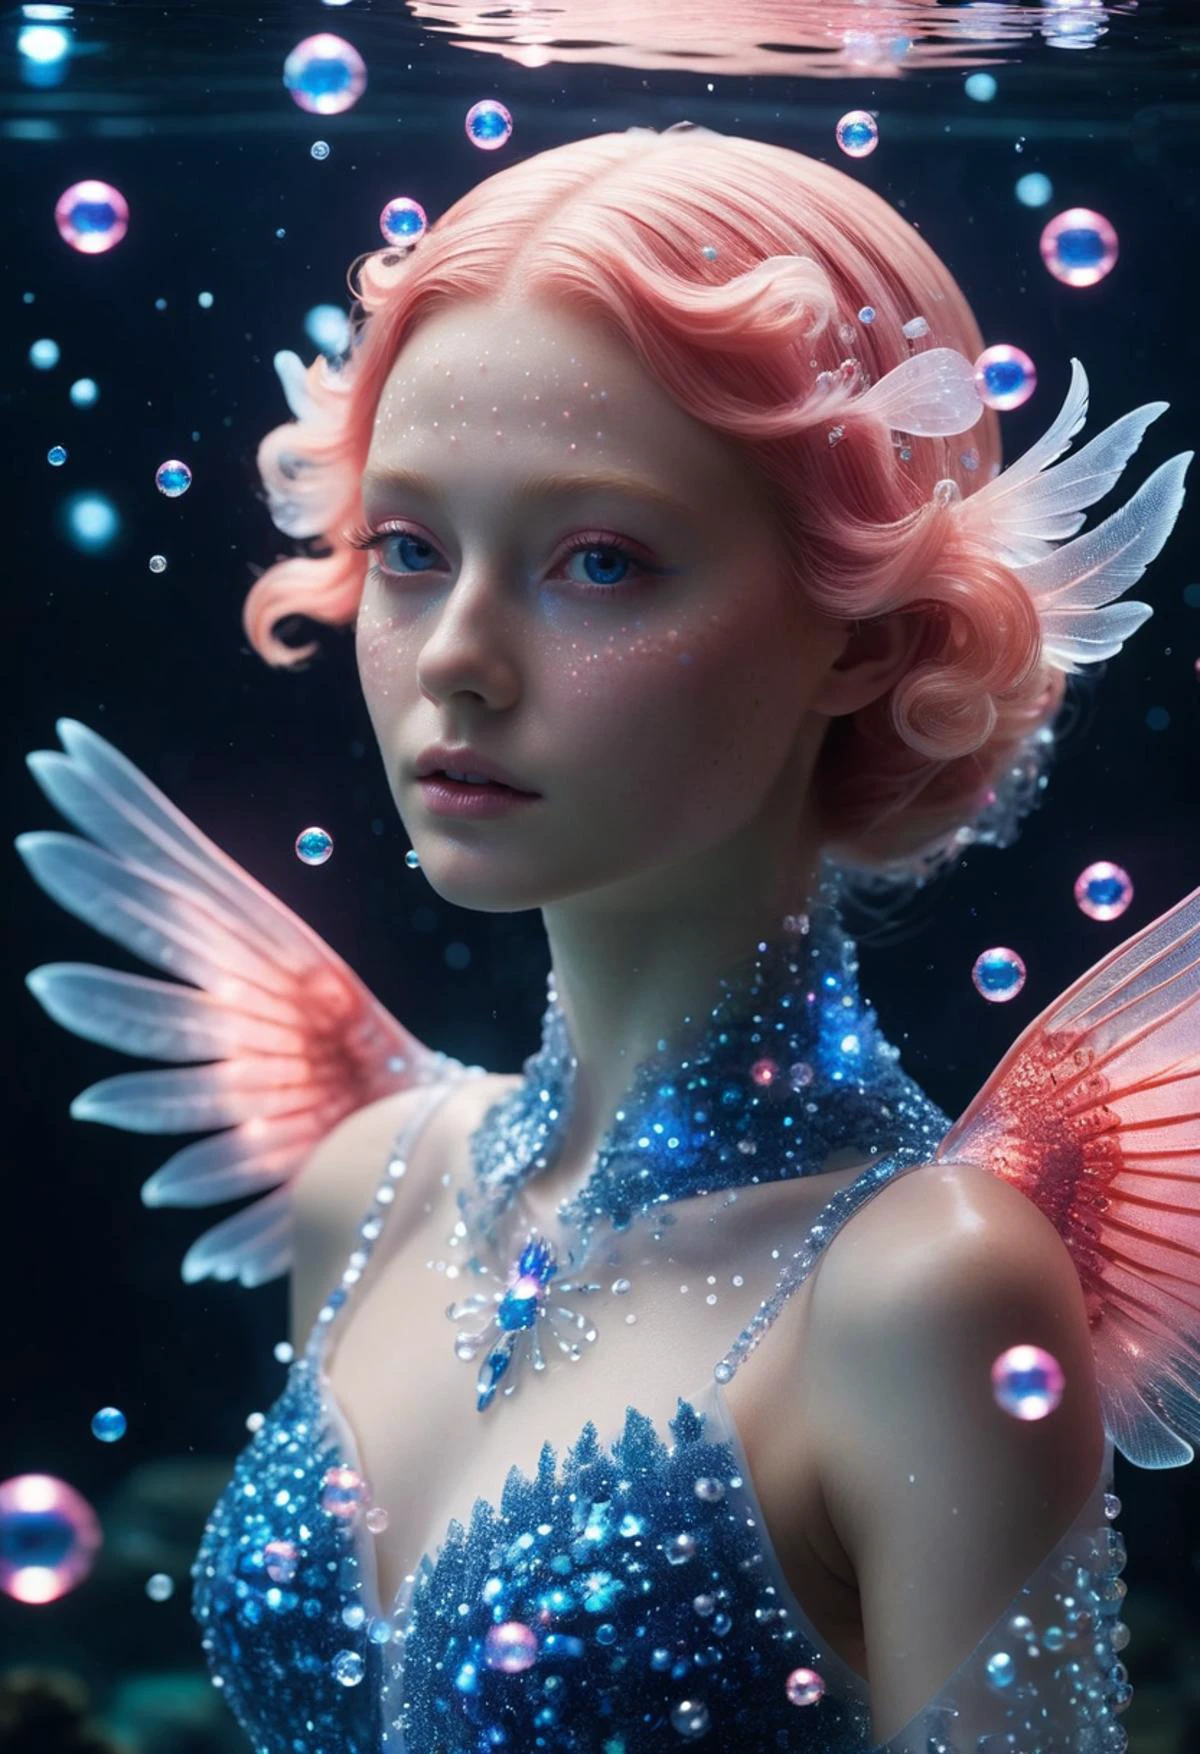 サンゴの生き物, 透明感のある輝く肌, クローズアップポートレート,  翼,青とピンクのキラキラした粒子が彼女の体の周りをキラキラと輝いている, バブル,  水中で, 神秘的で美しい,エレガント,素晴らしい, 究極のまどか